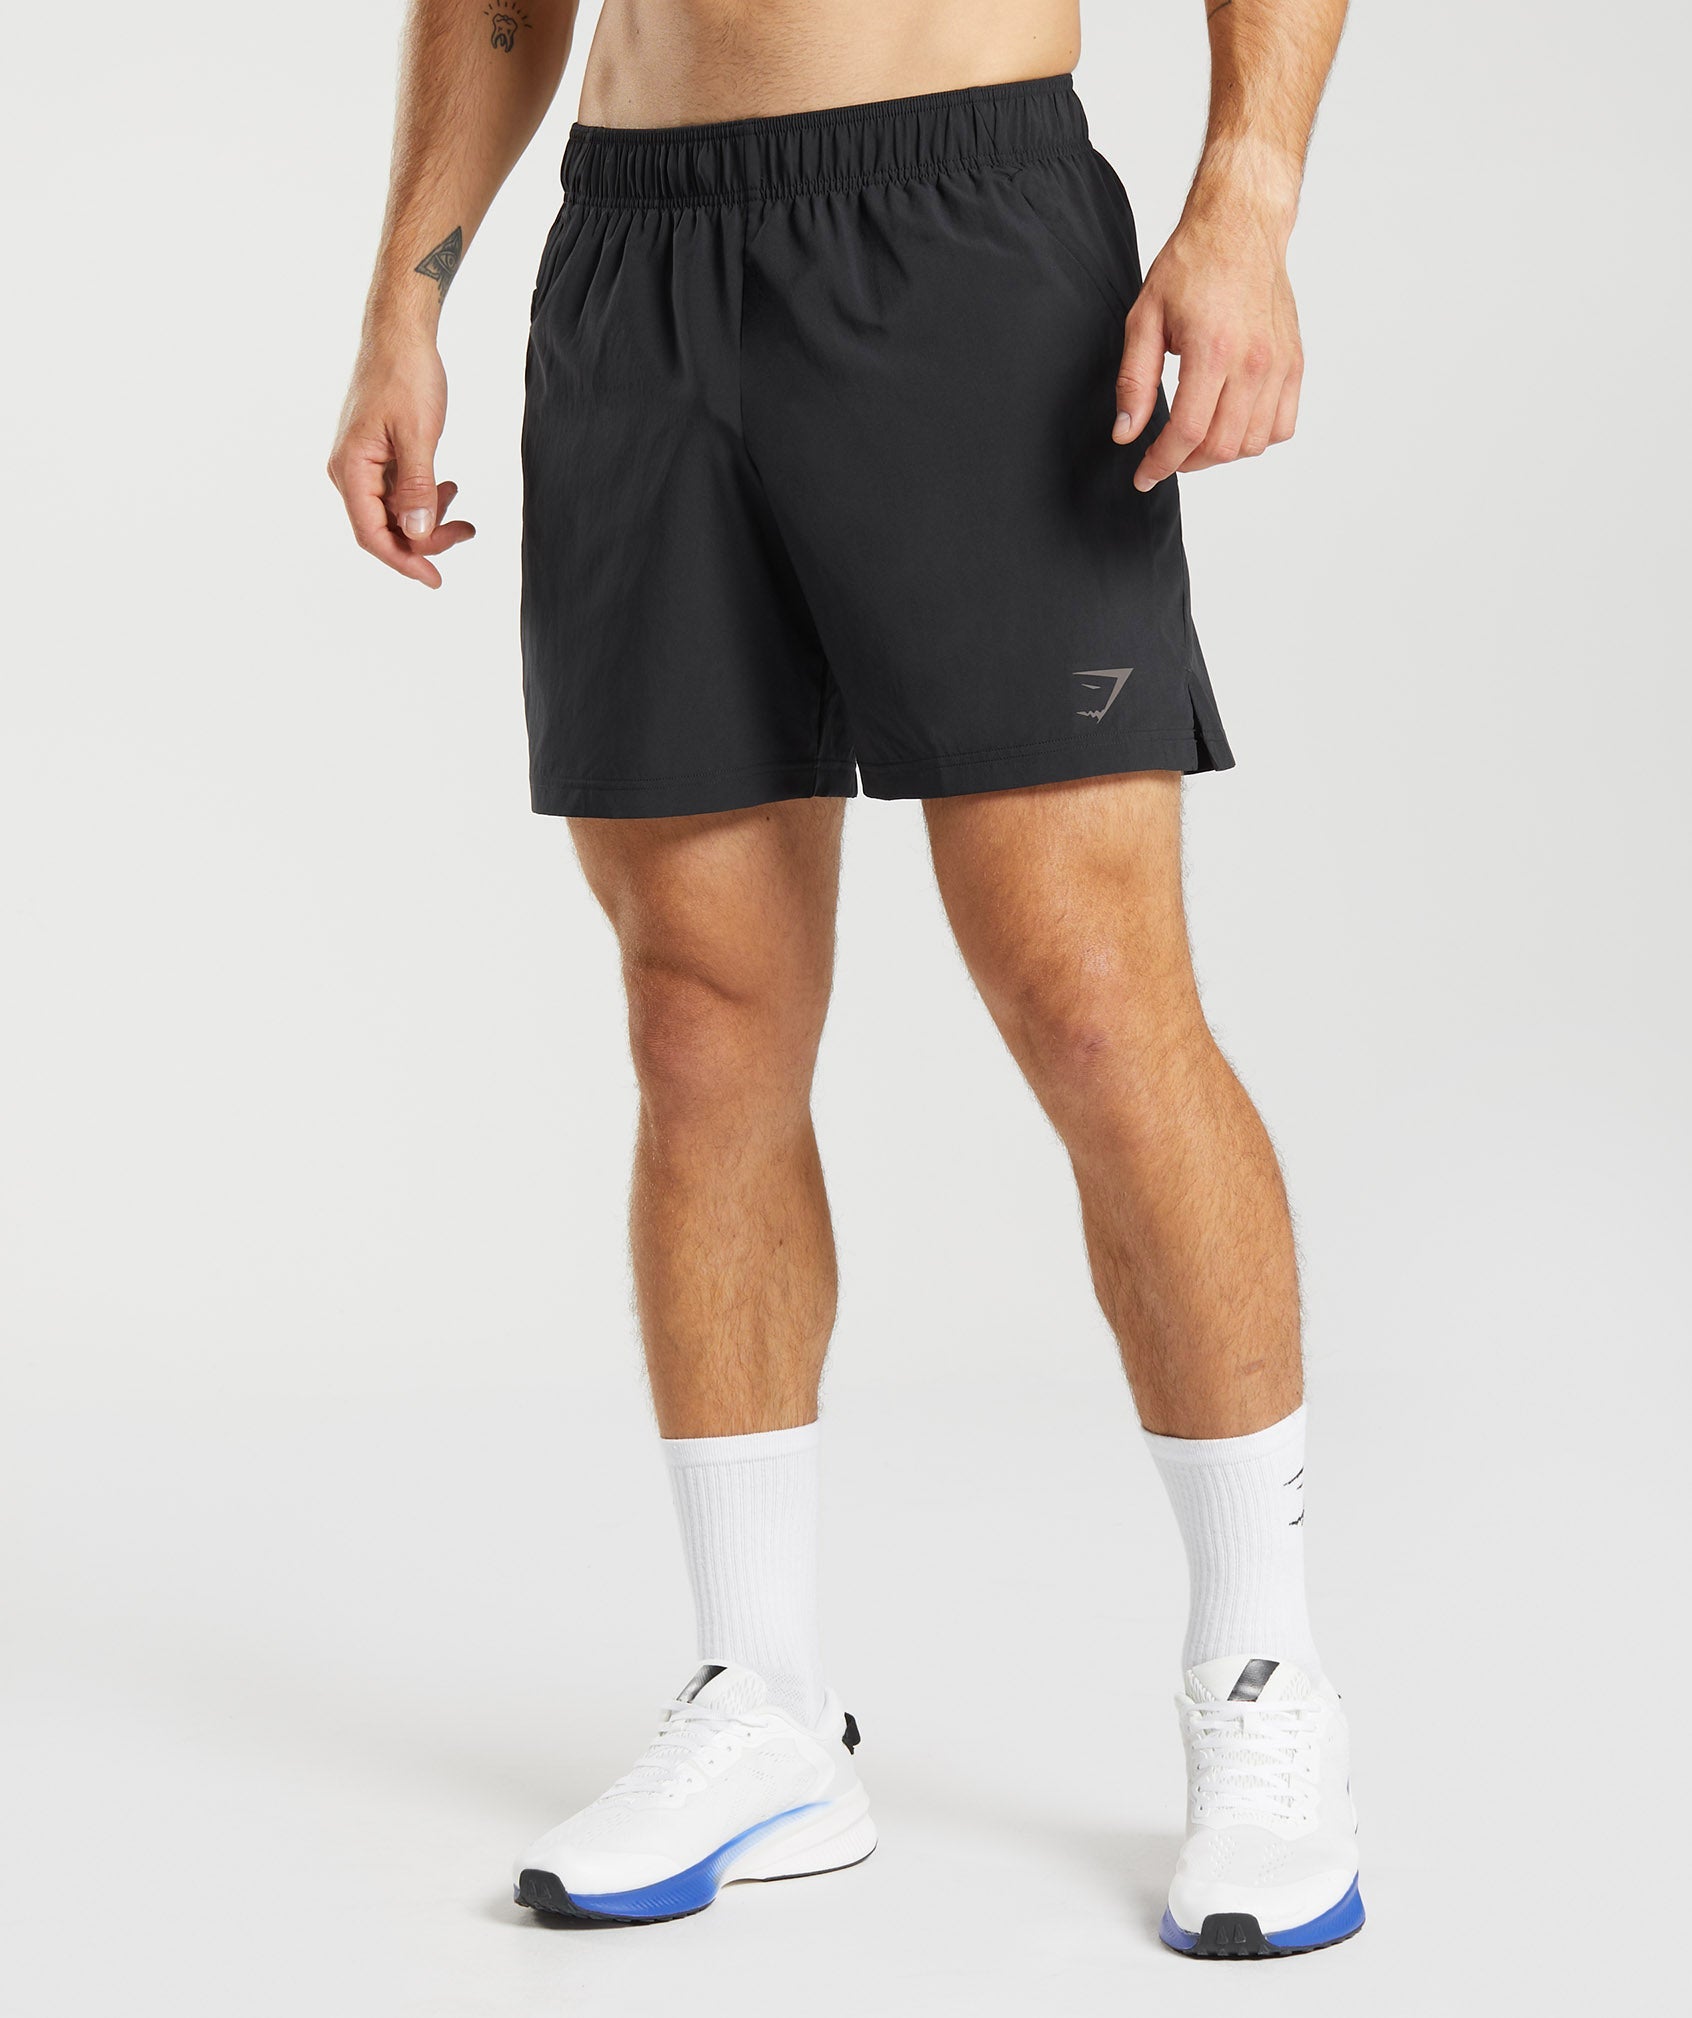 Gymshark Sport 7 Shorts - Fog Green/Black